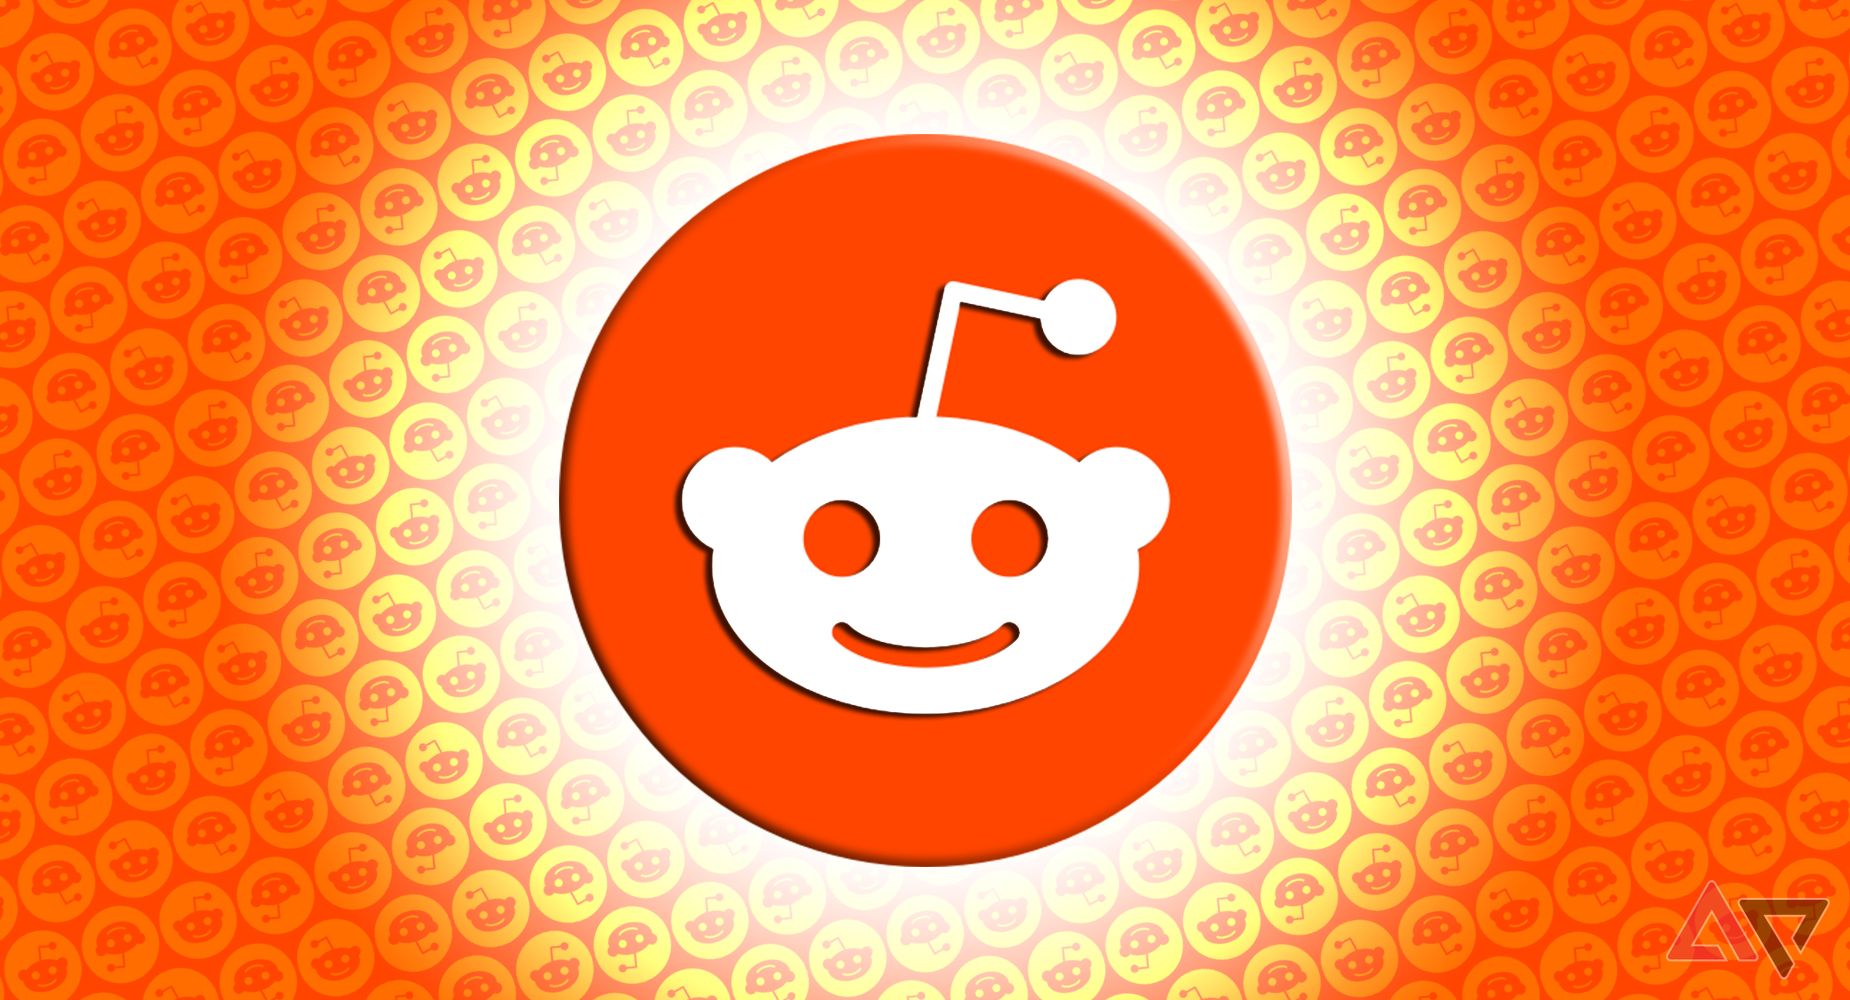 Reddit logo over a field of Reddit logos